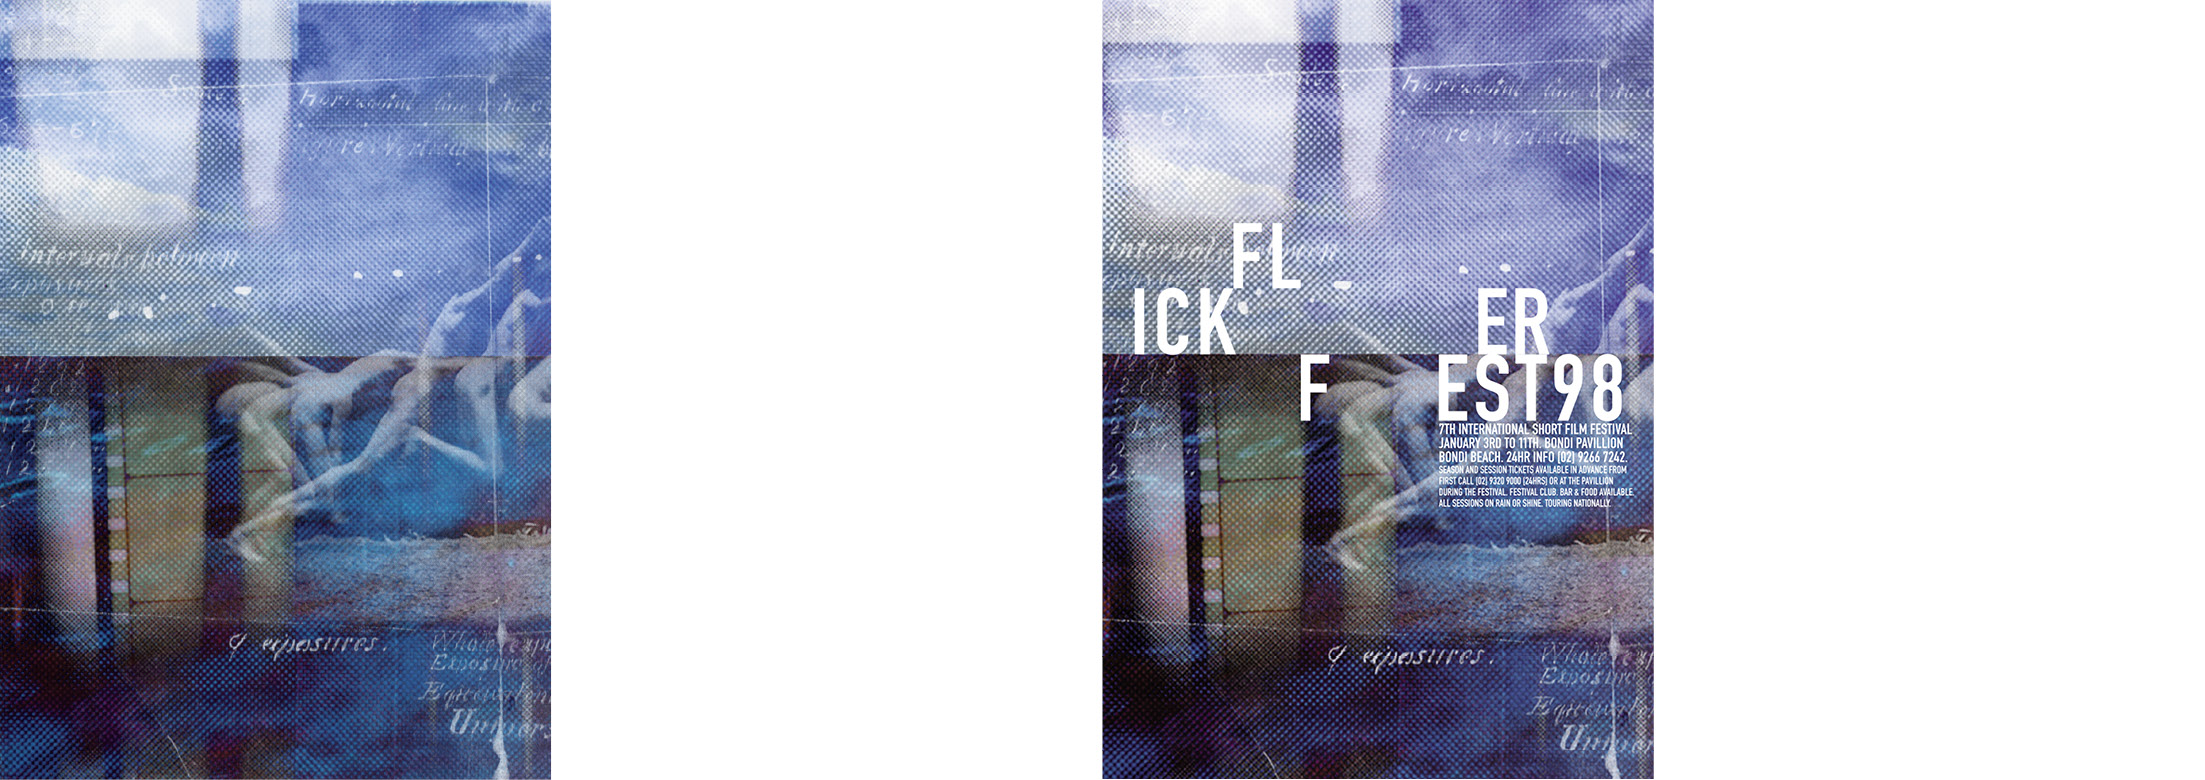 Flickerfest 2000 Poster